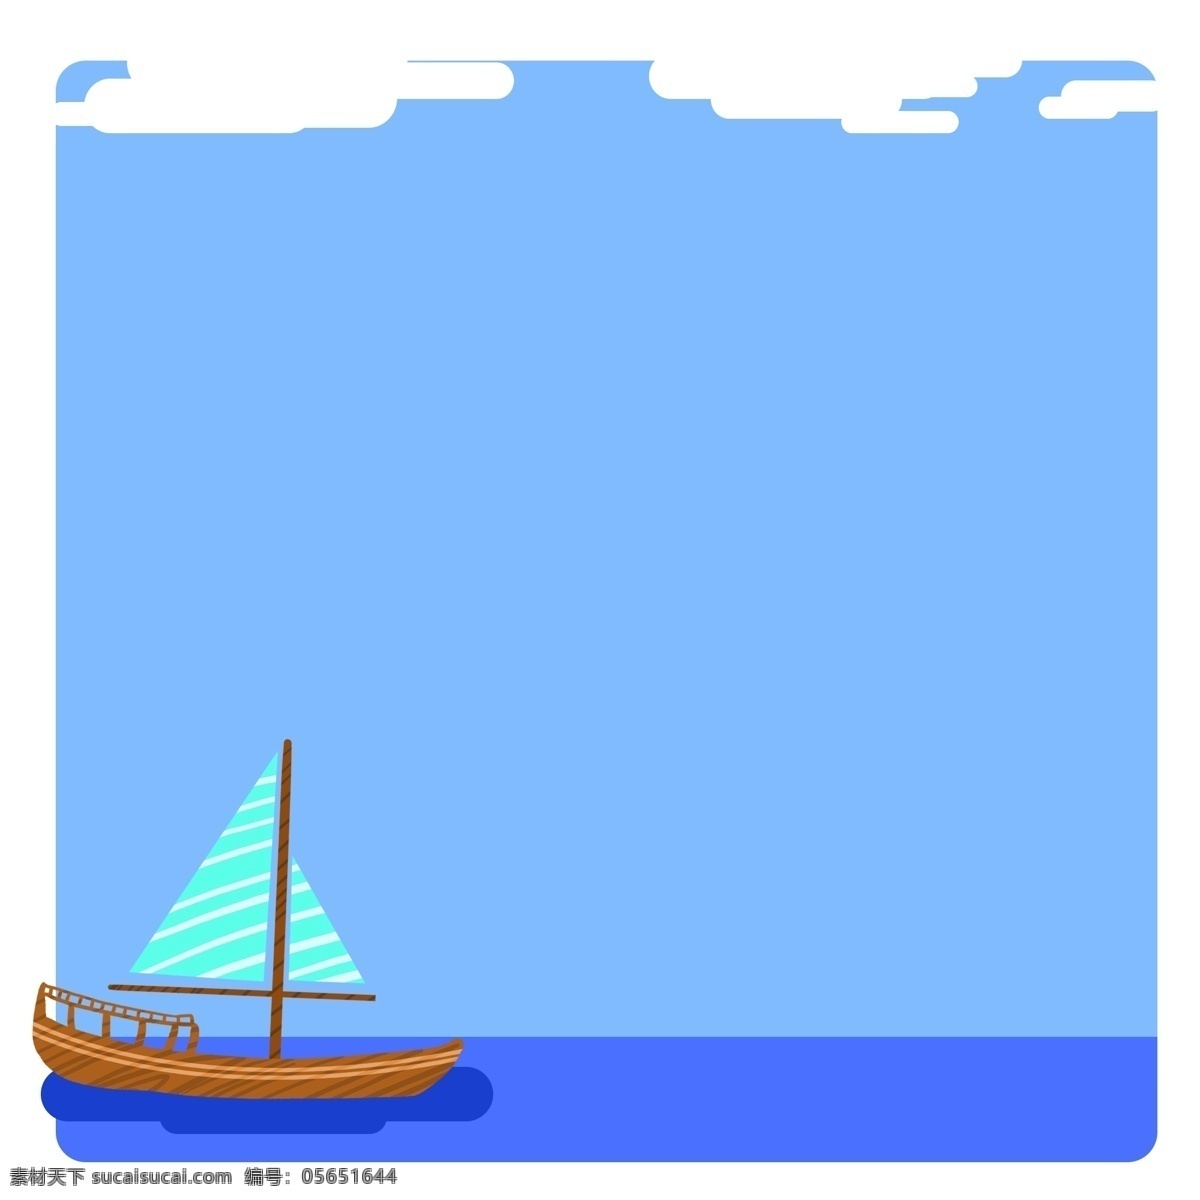 海洋 帆船 边框 插画 帆船边框 海洋边框 蓝色海洋边框 帆船边框插画 木质帆船 海水边框 海水